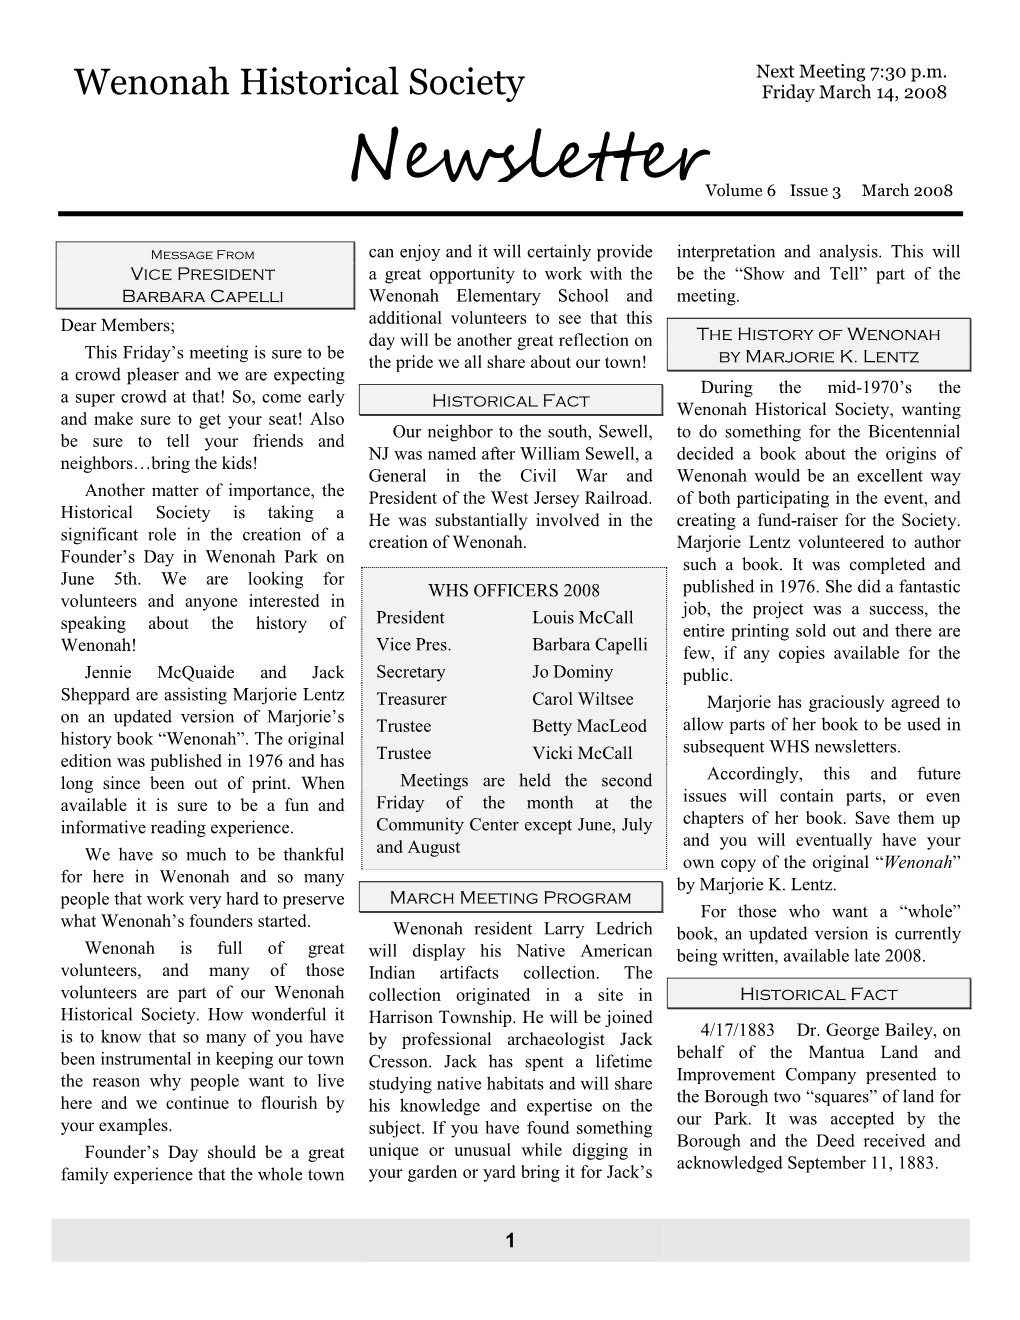 Newsletter Volume 6 Issue 3 March 2008